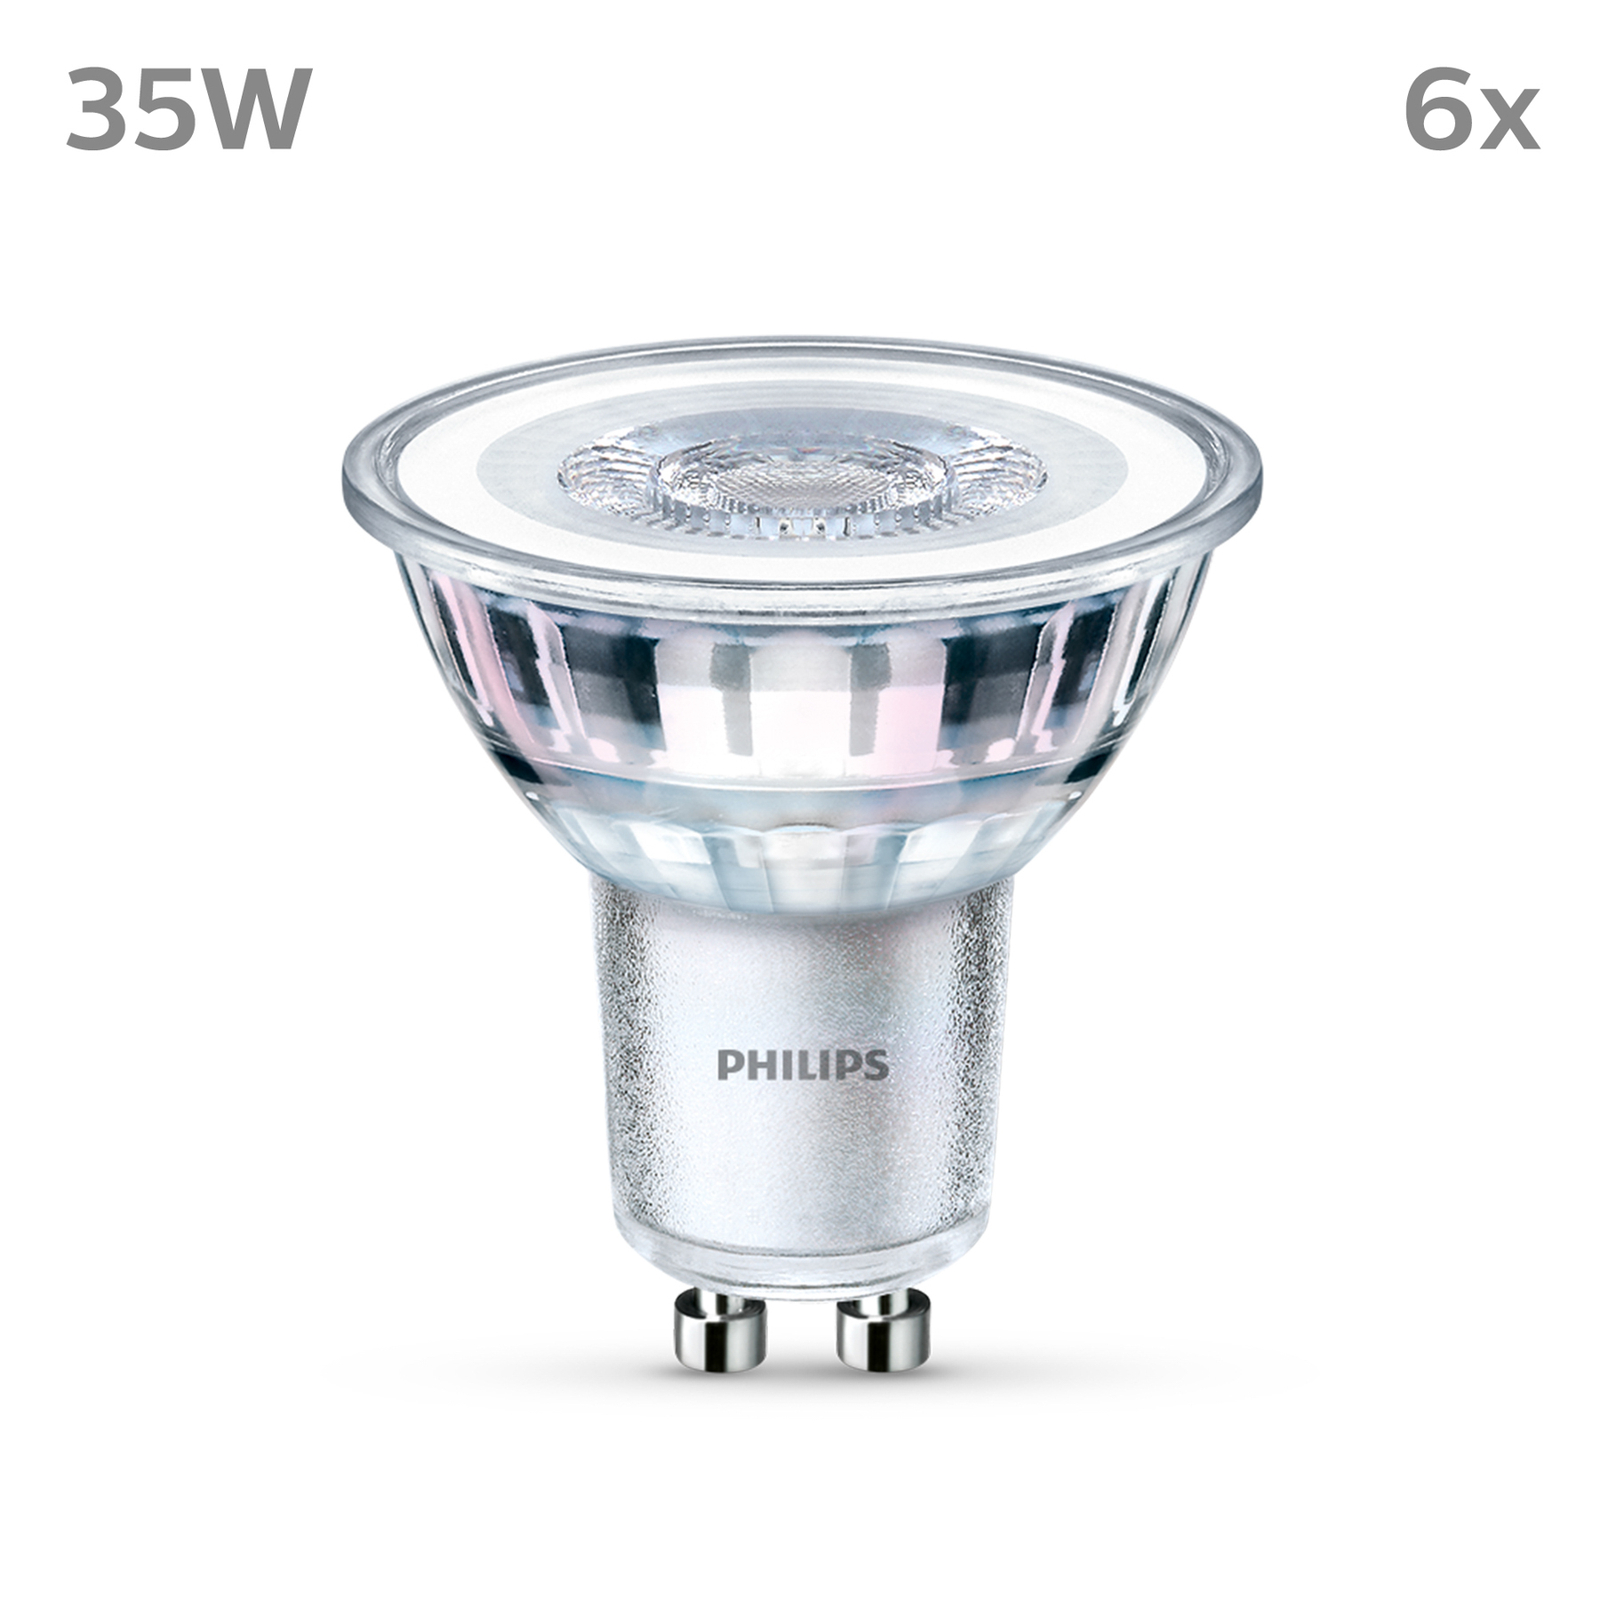 Philips LED лампа GU10 3,5W 275lm 840 clear 36° 6бр